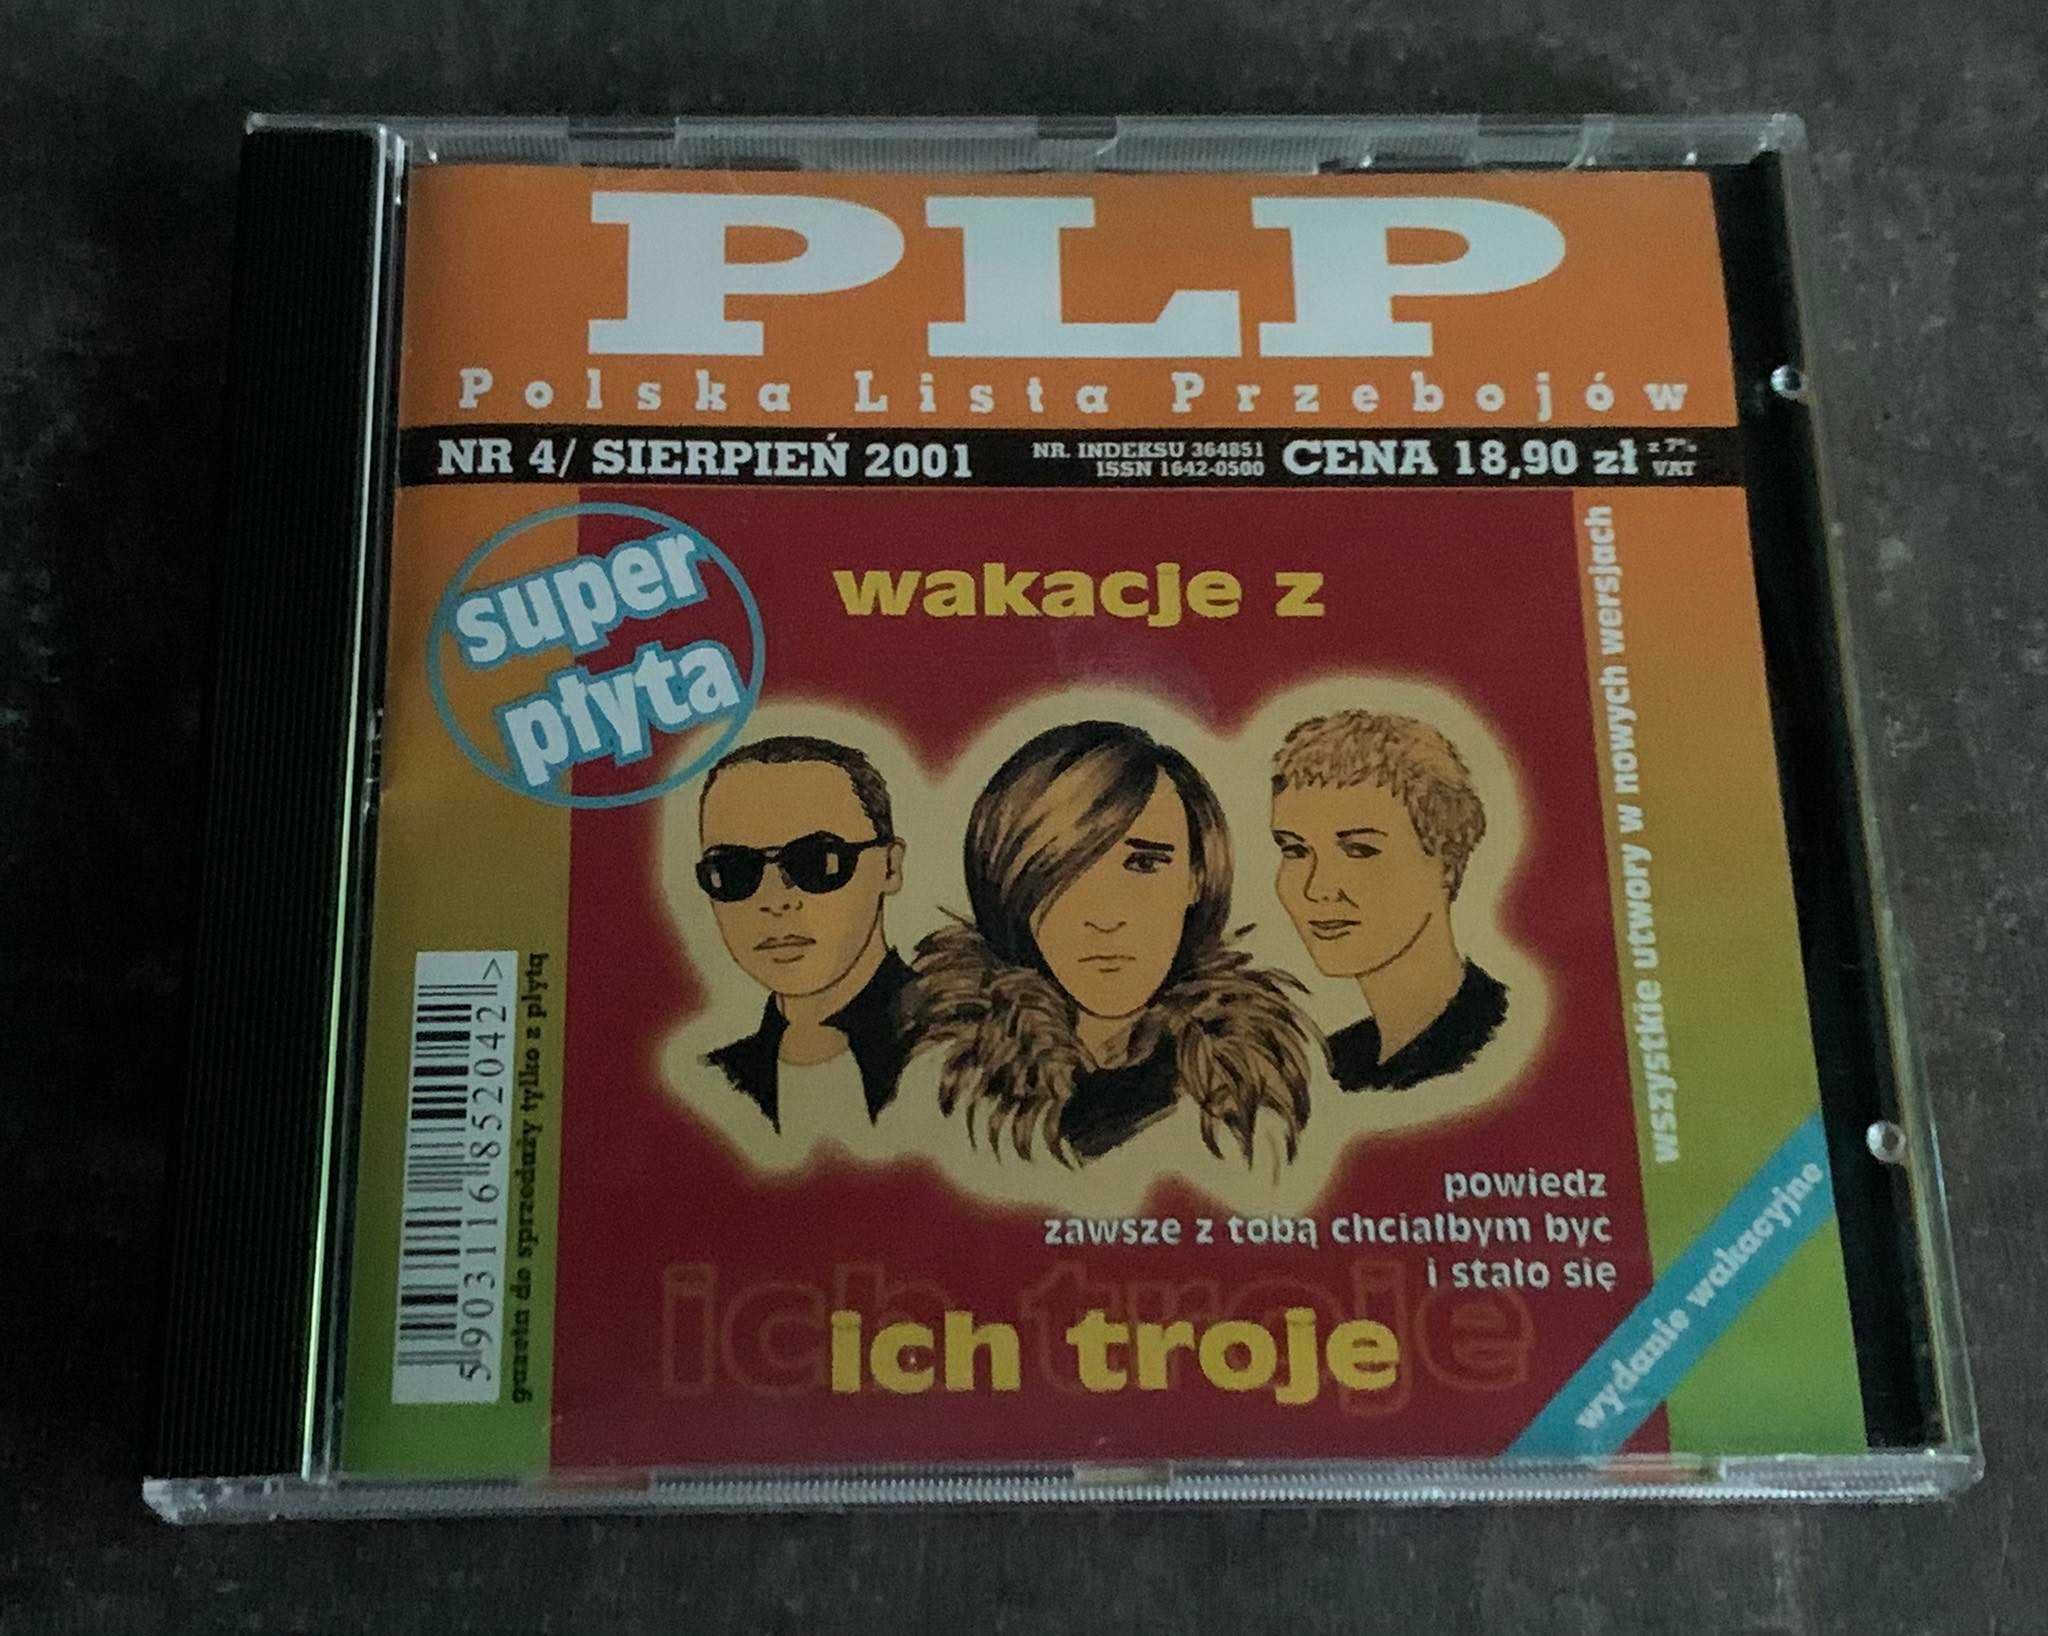 Polska Lista Przebojów -Wakacje z Ich Troje -CD- 2001r. - EX! UNIKAT